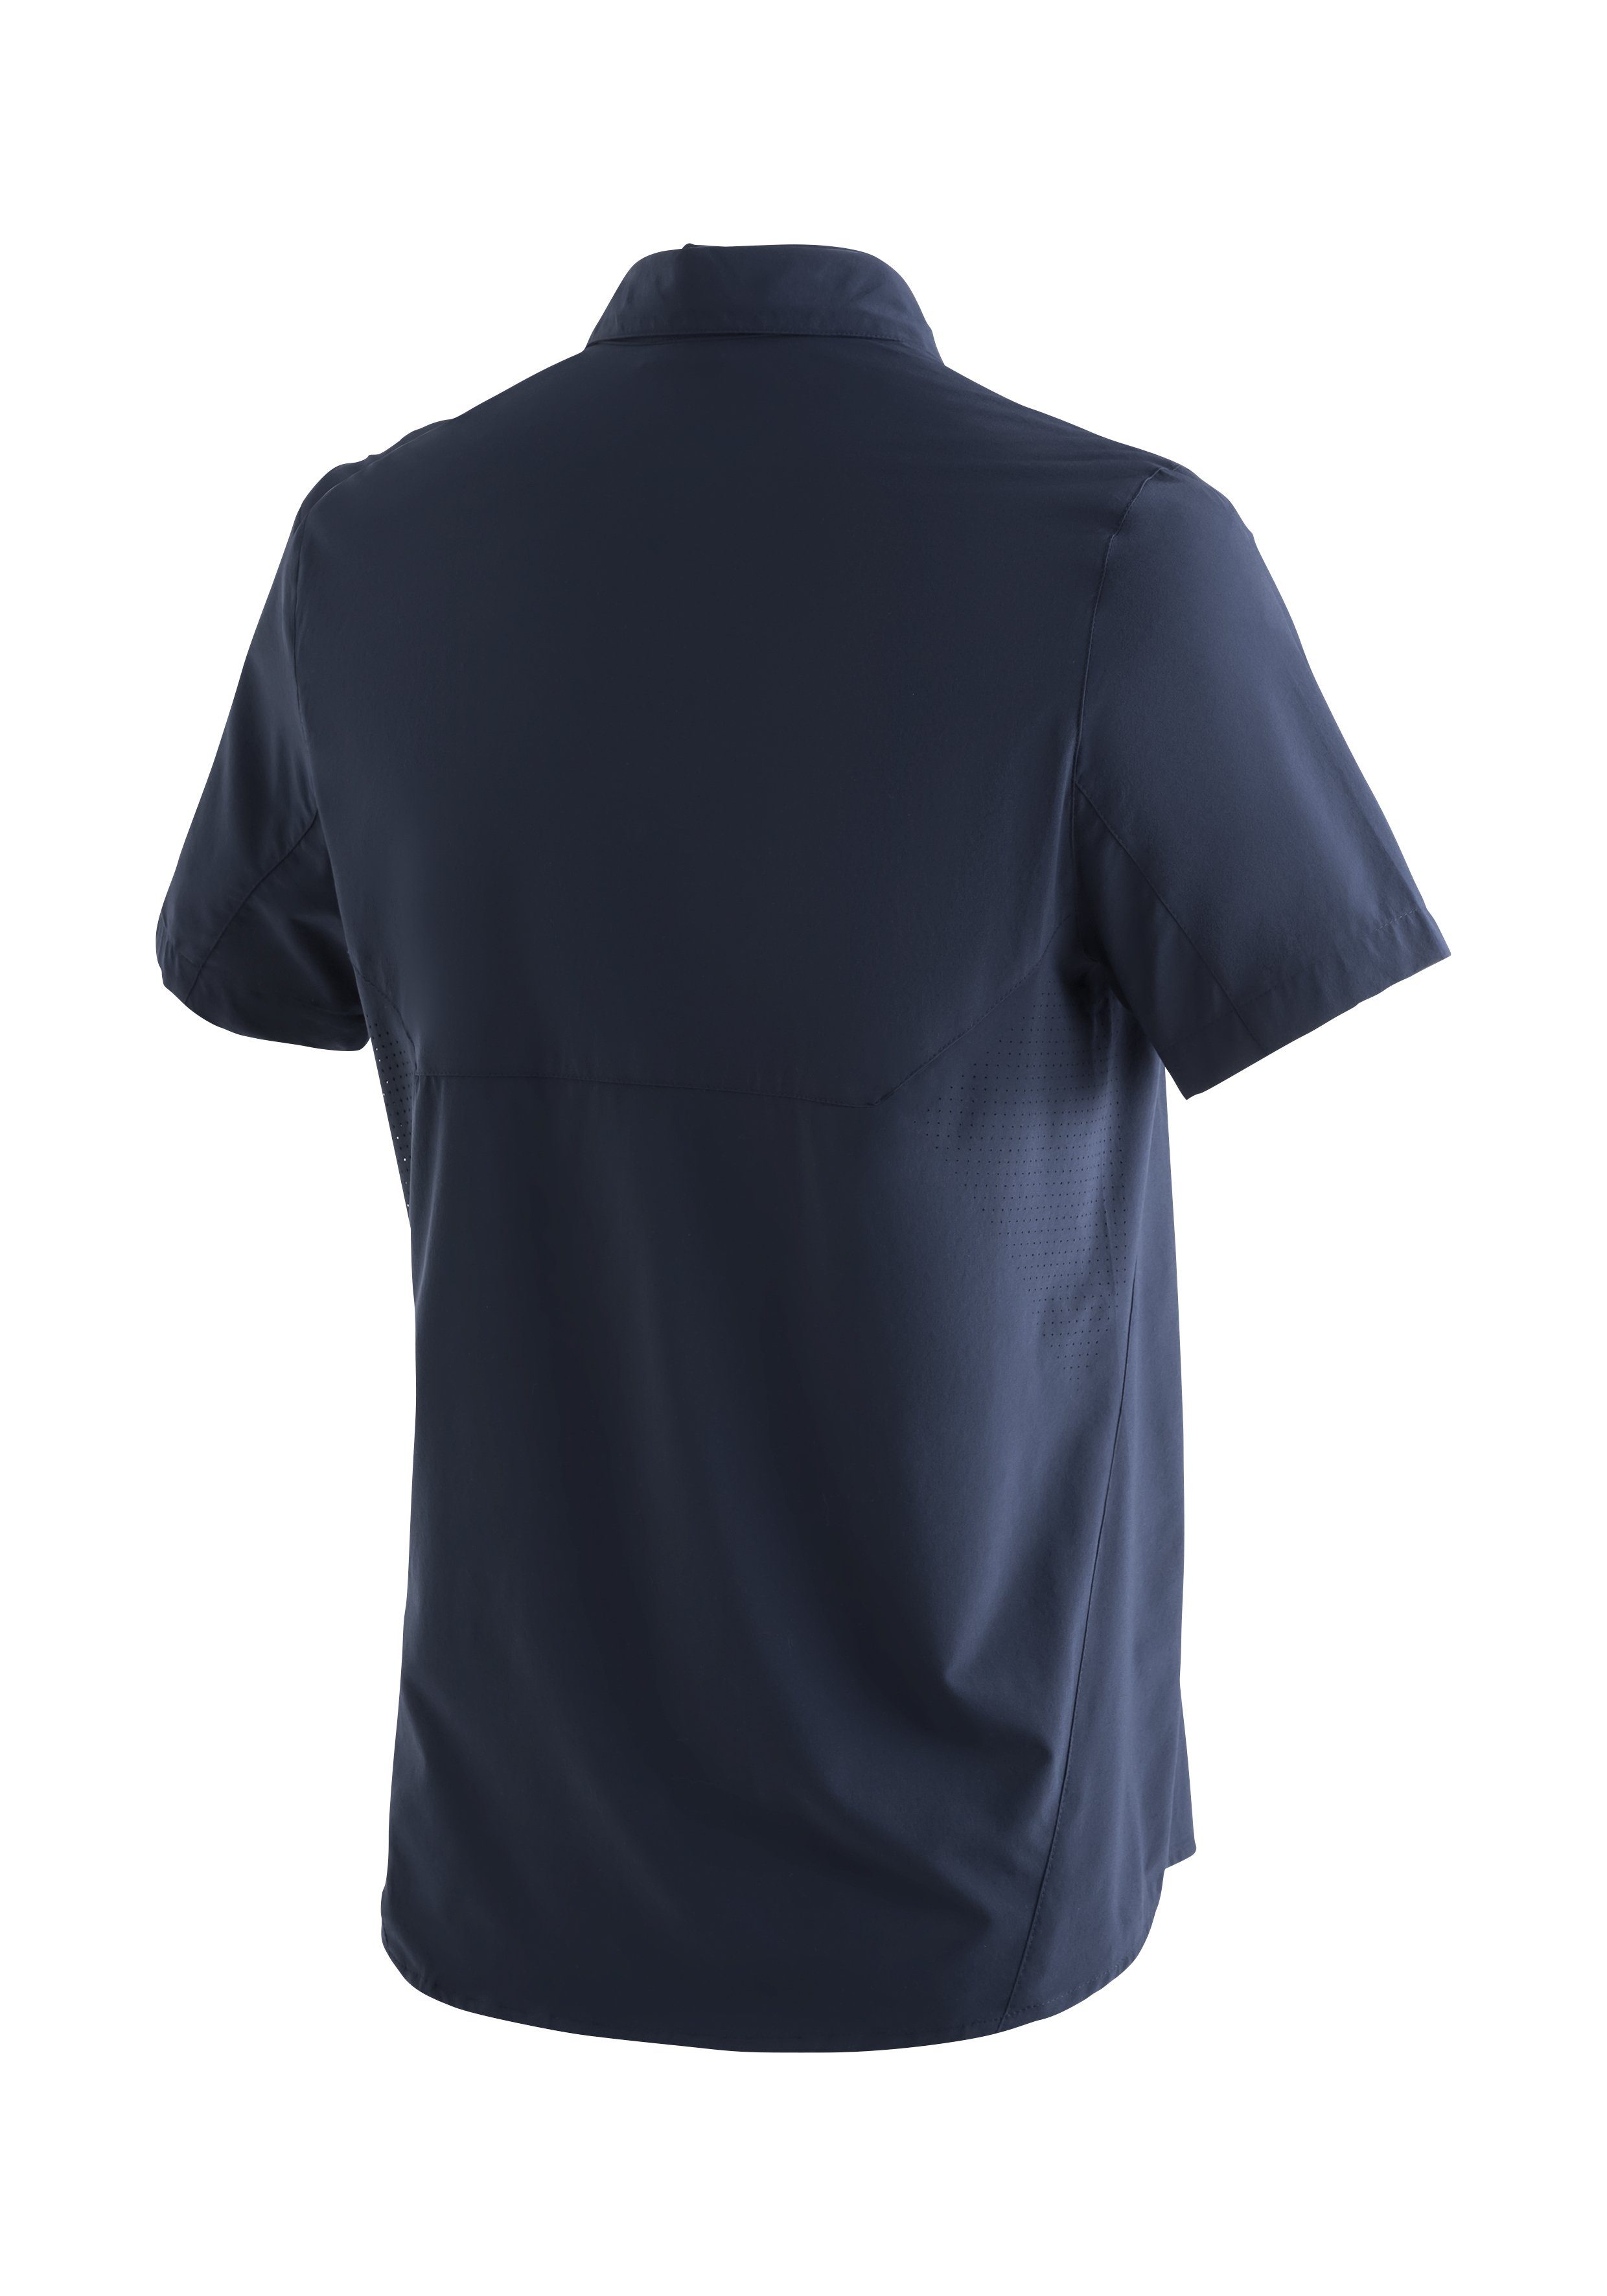 Maier Sports Funktionshemd Sinnes Sonnenkragen Leichtes, dunkelblau MS/S Tec mit elastisches Trekkinghemd